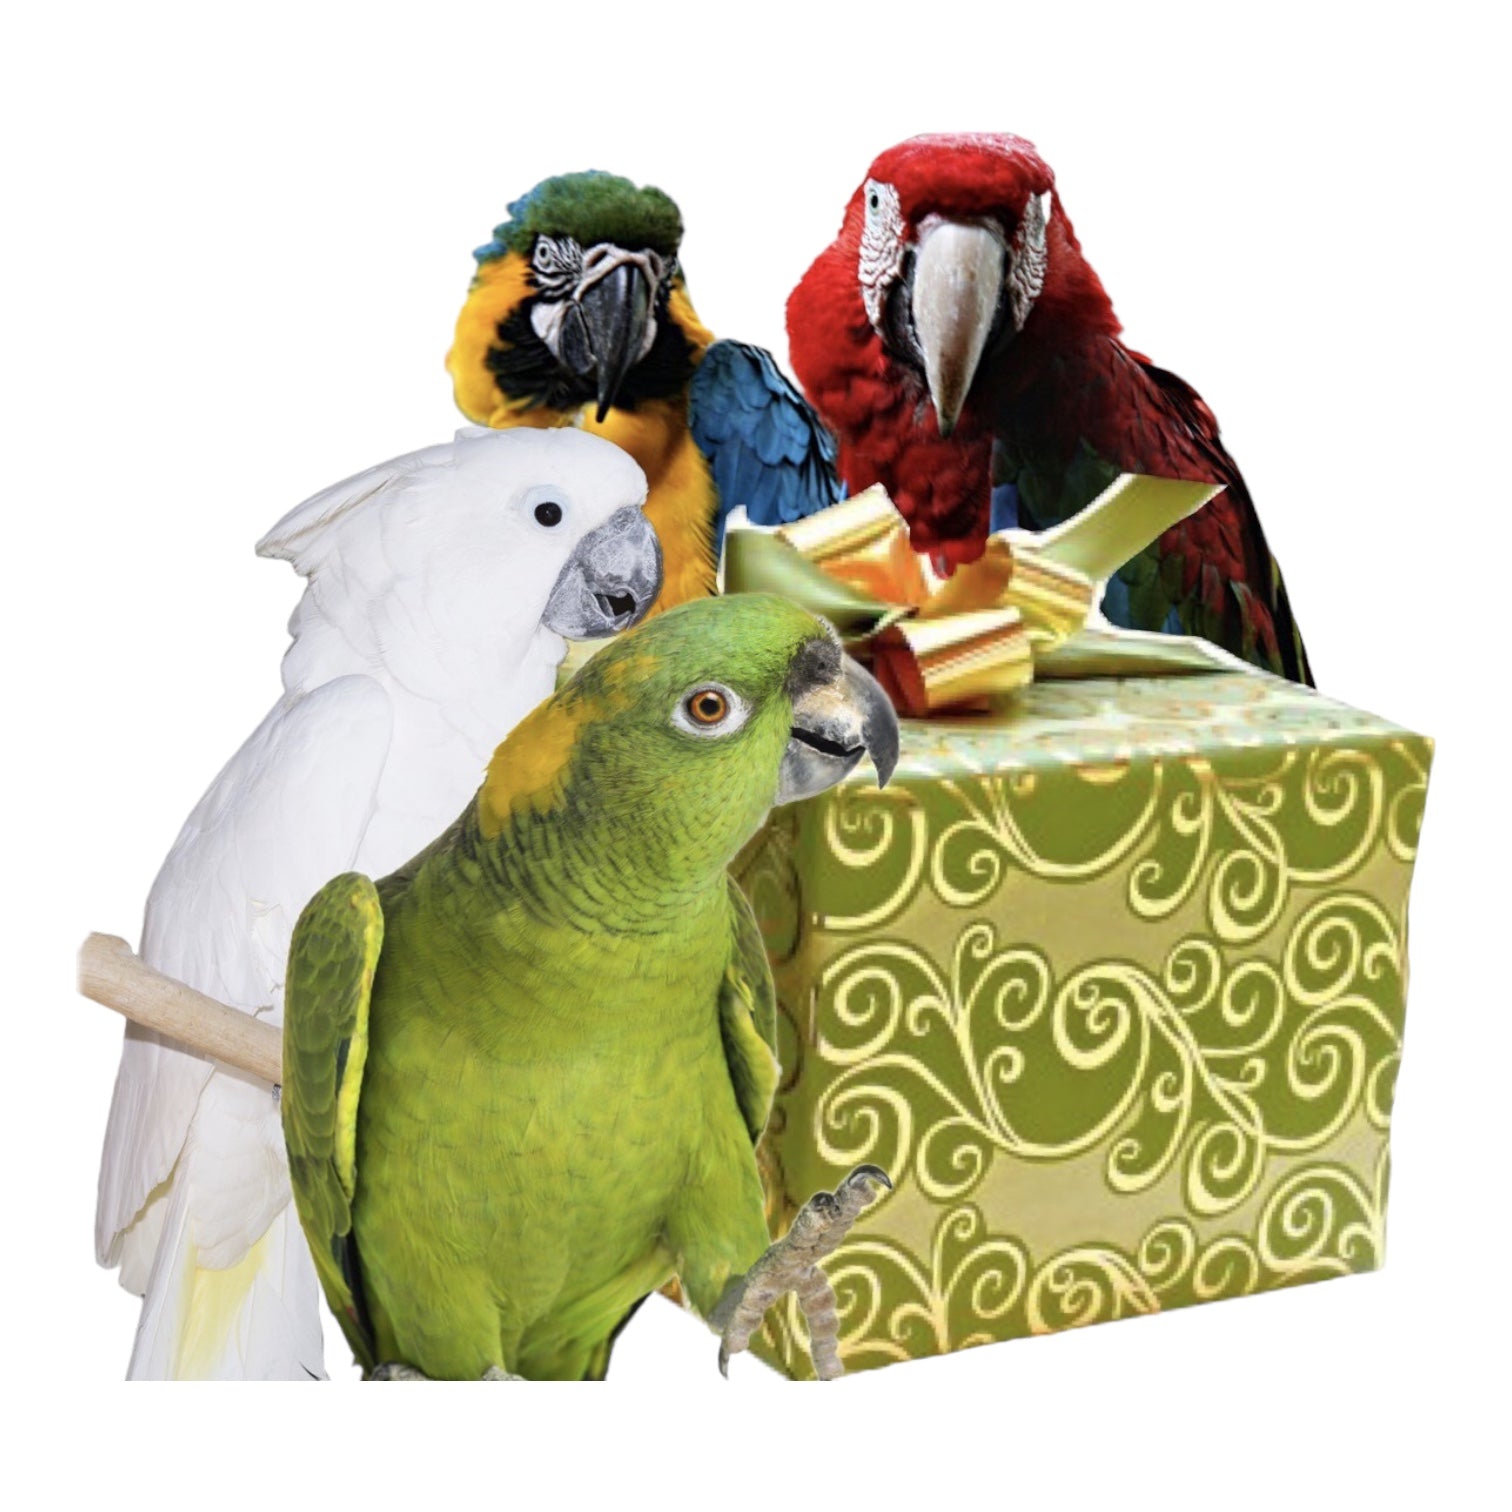 Maand box large. Voeding en speeltjes - Parrot and Bird Supplies